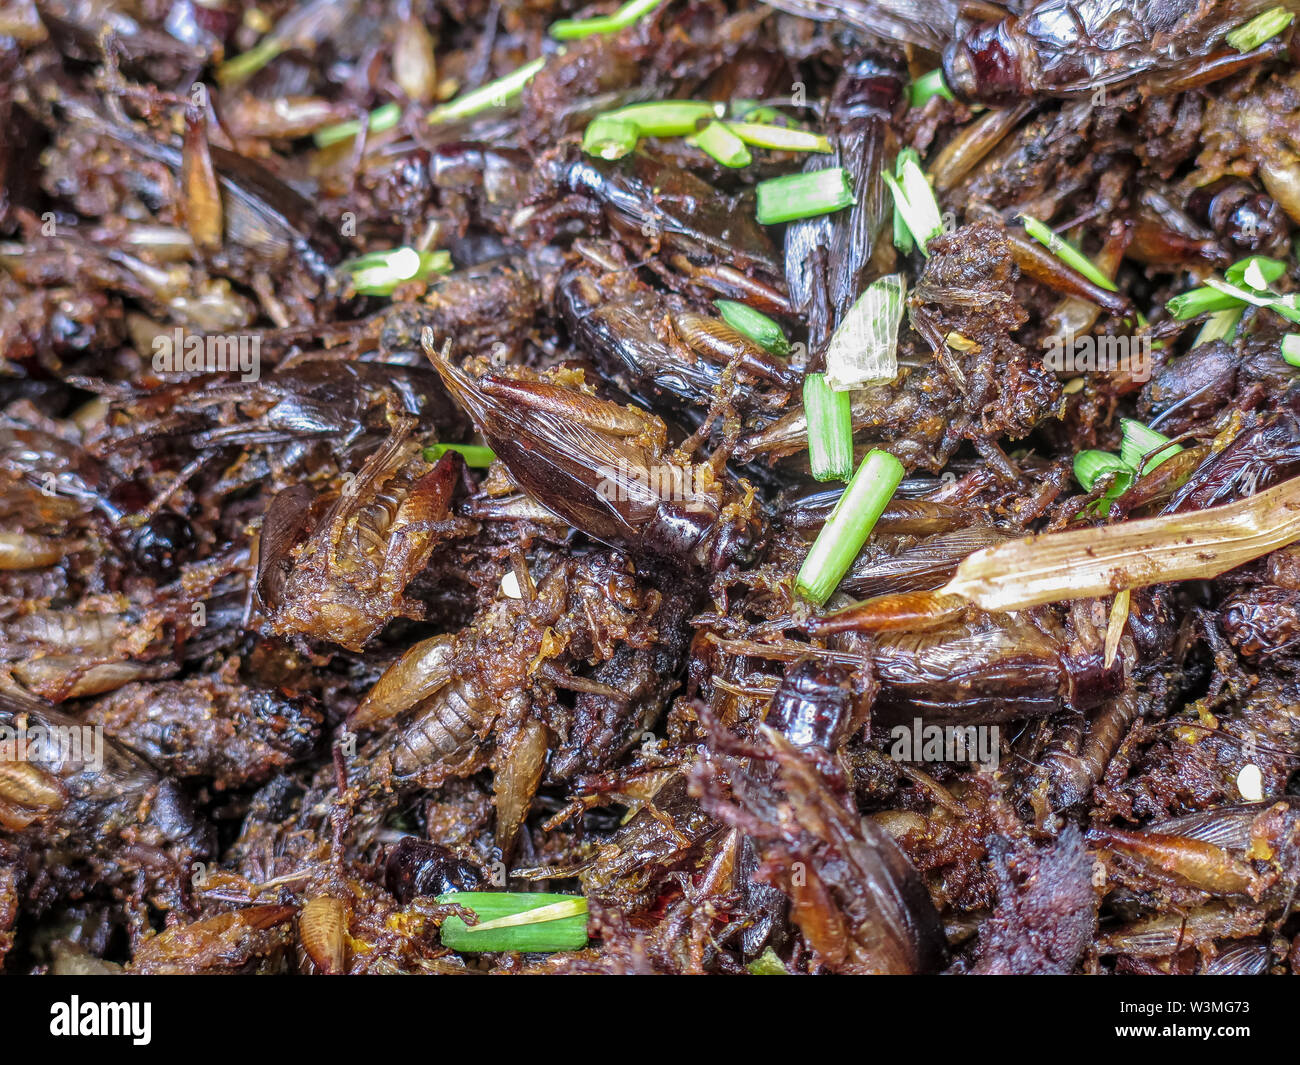 Spinnen, Grillen, Schaben und andere gebratene Insekten in einem  kambodschanischen Markt Stockfotografie - Alamy